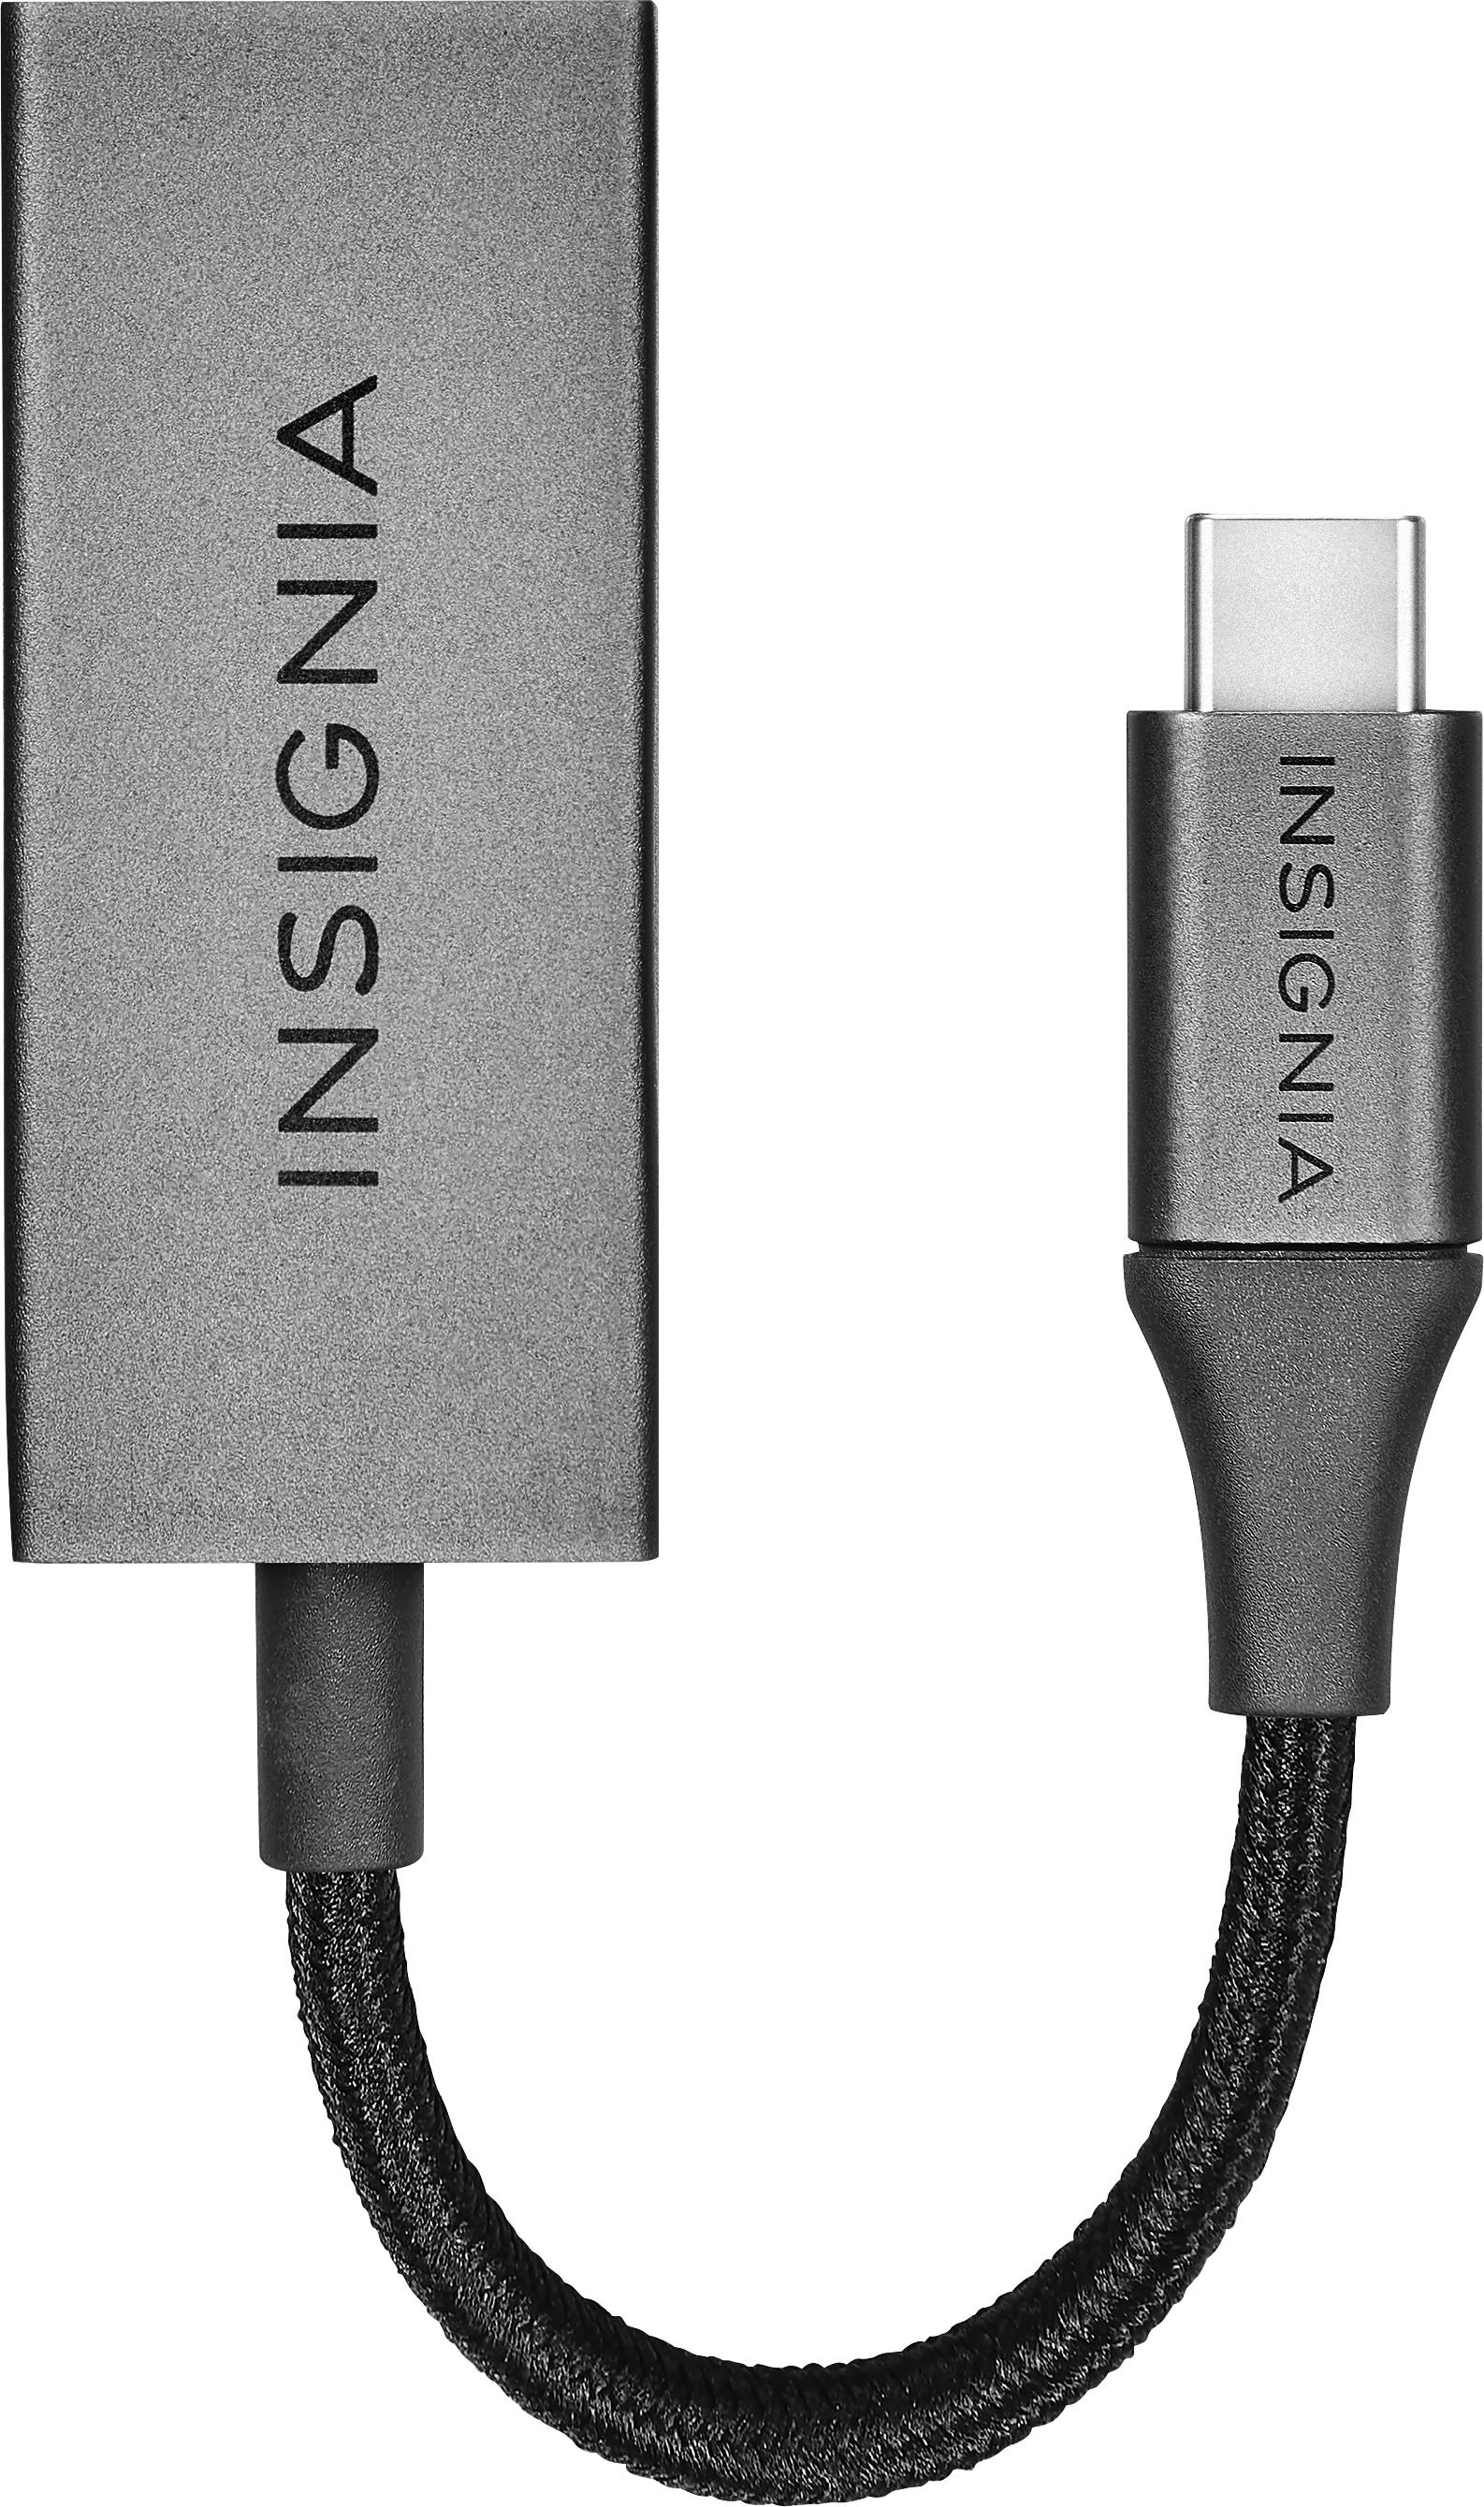 Korrekt det tvivler jeg på Postnummer Insignia™ USB-C to Ethernet Adapter Black NS-PA3C6E - Best Buy